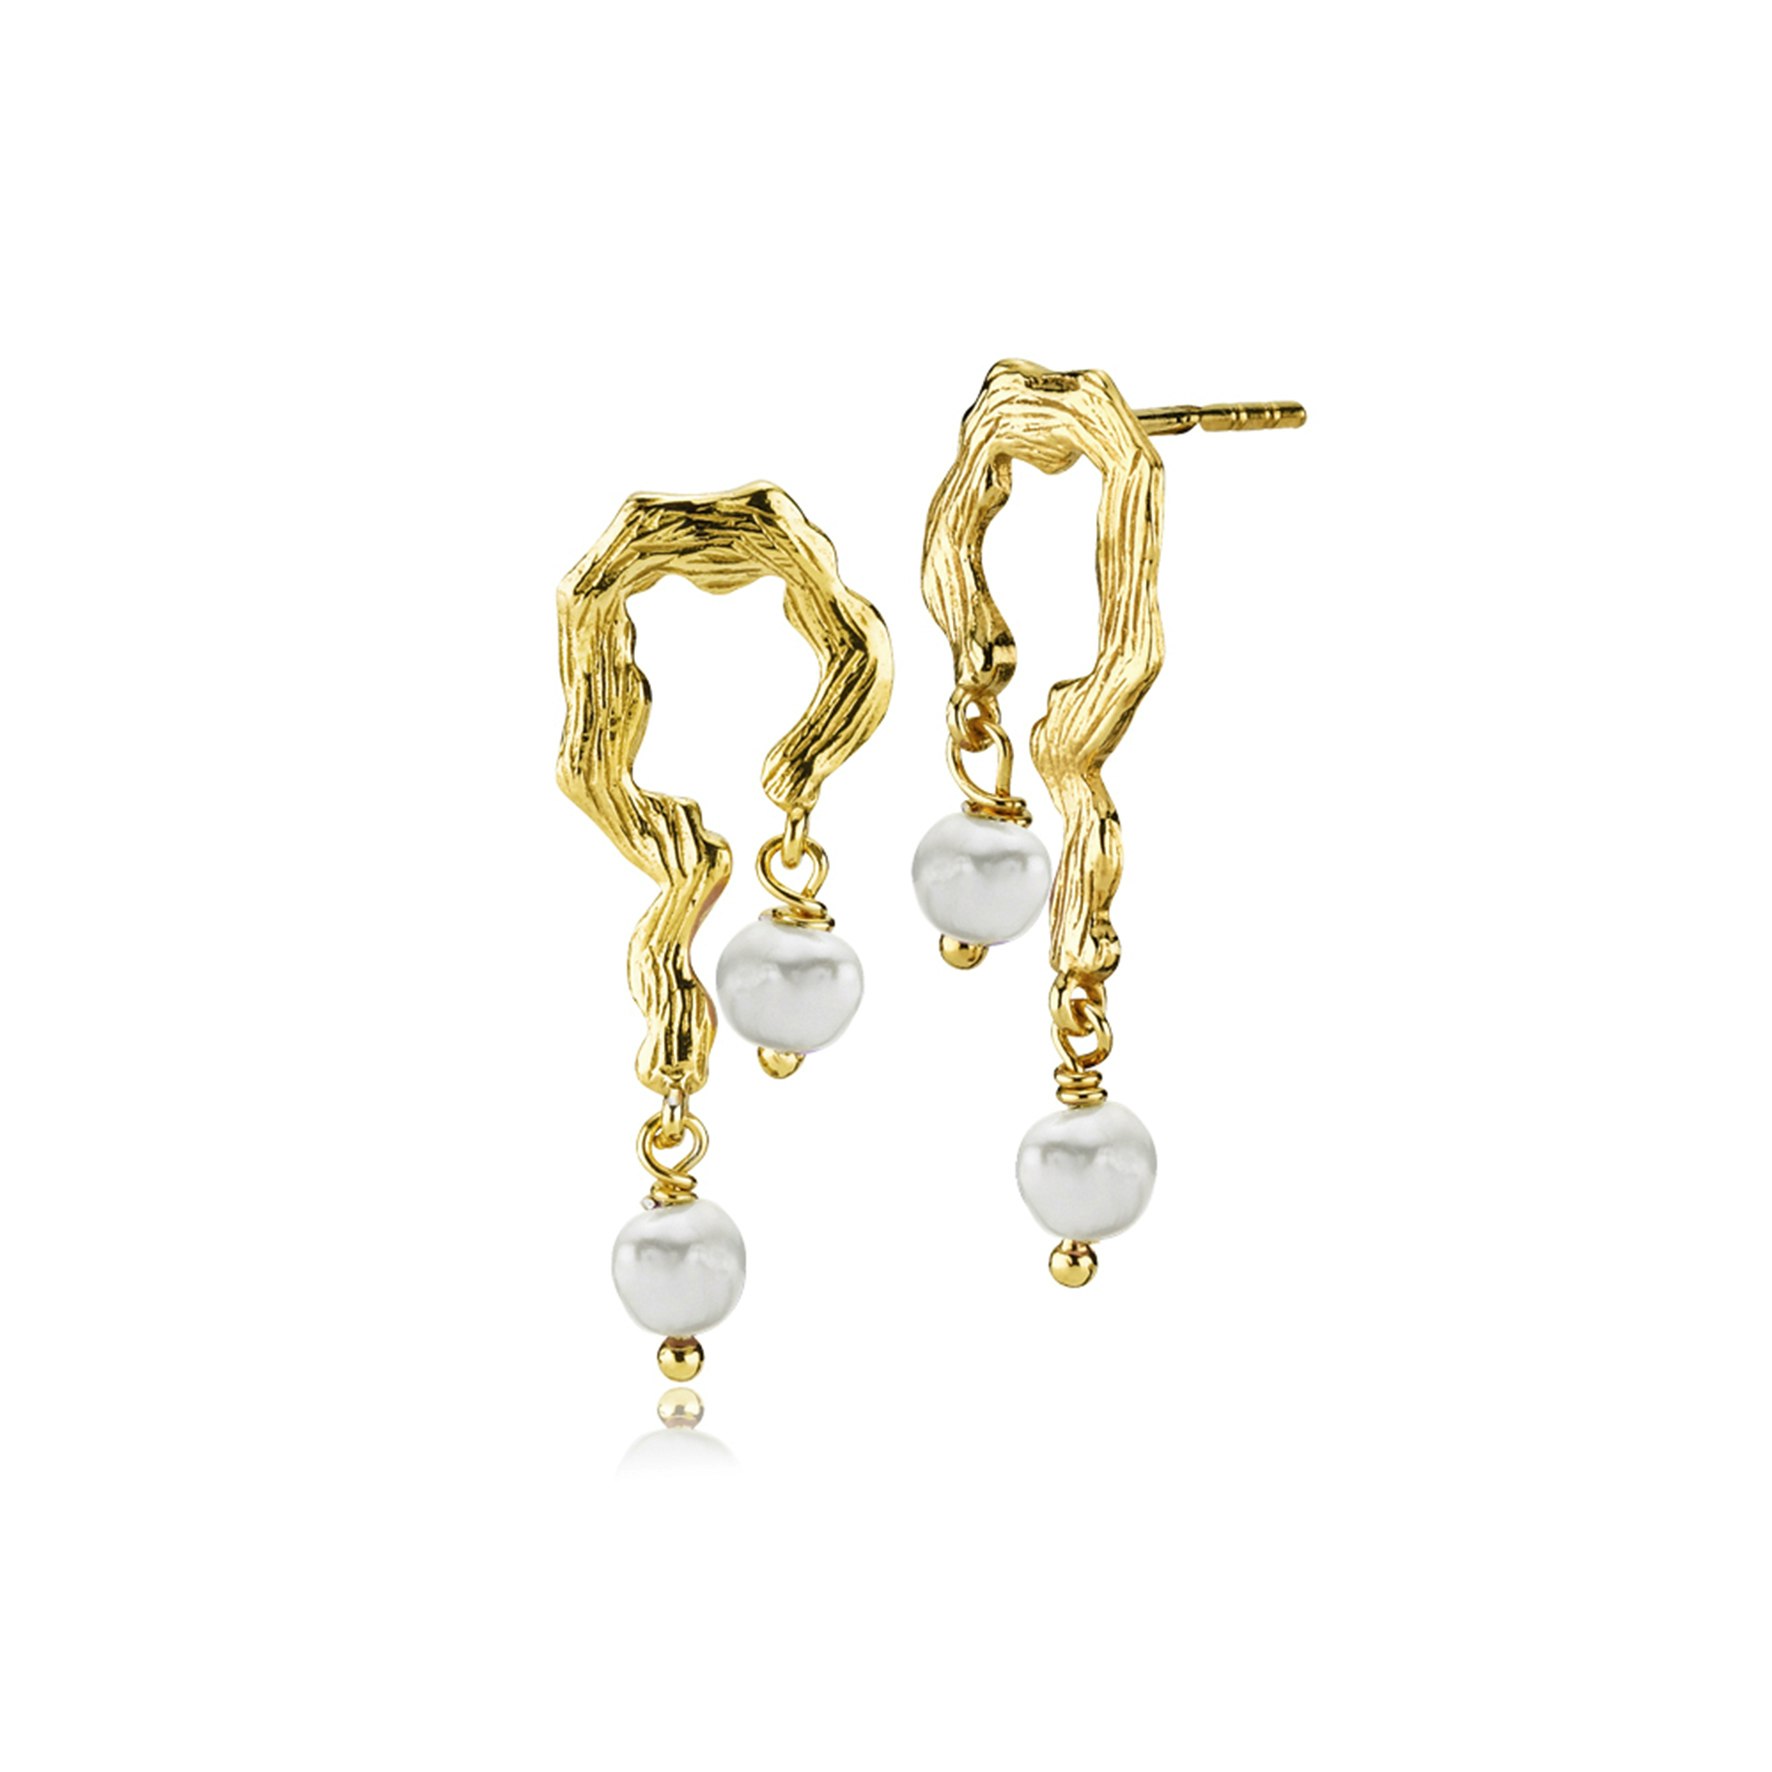 Lærke Bentsen By Sistie Earrings With Pearls von Sistie in Vergoldet-Silber Sterling 925